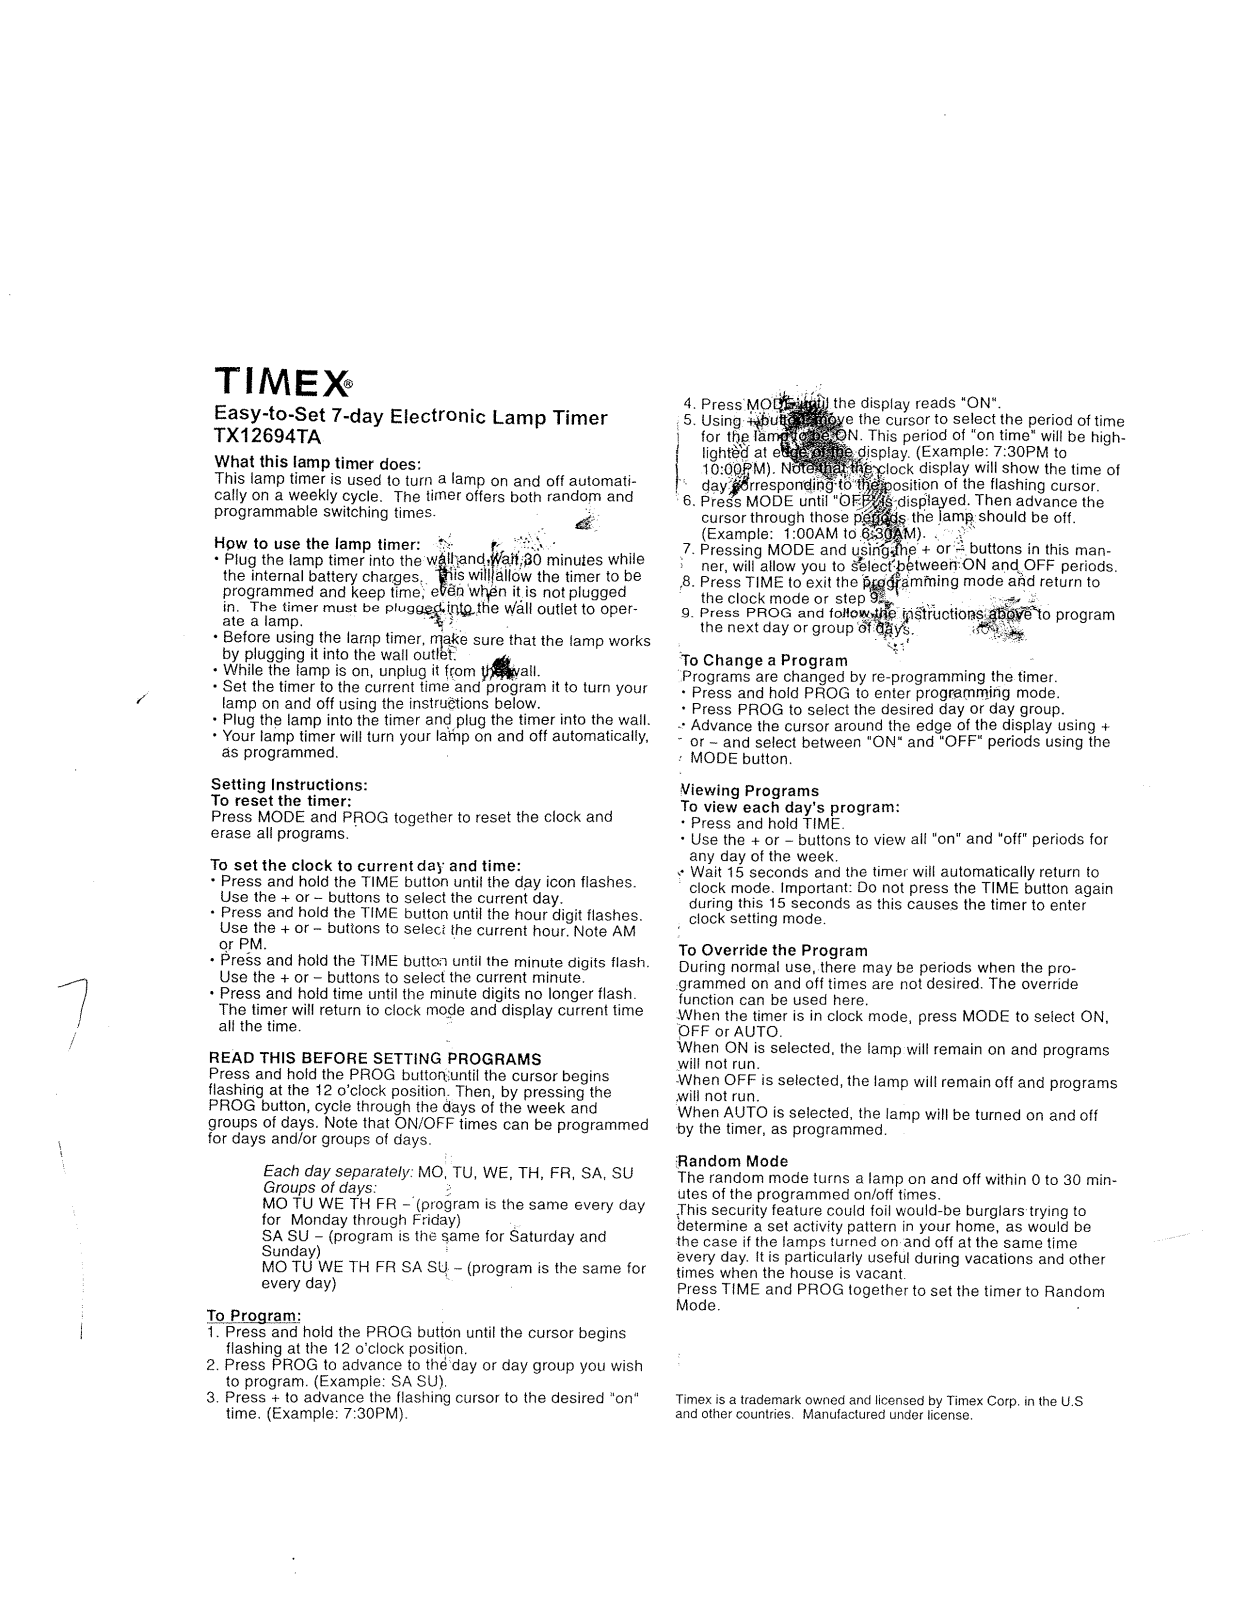 Timex TX12694TA Manual